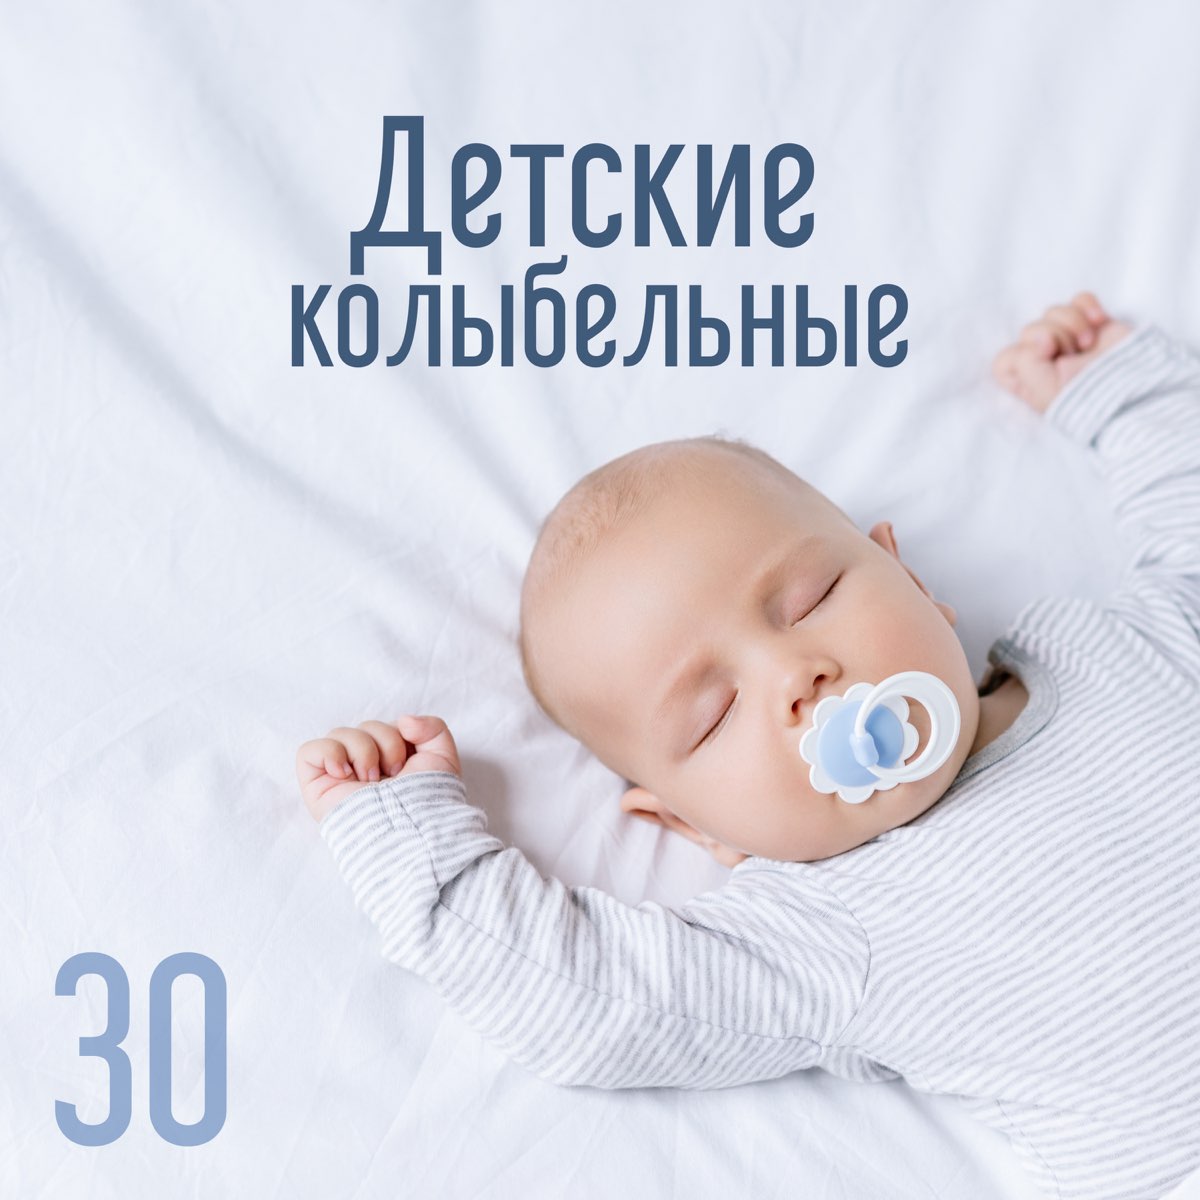 Песенки для быстрого засыпания малыша слушать. Классика для малышей для сна. Успокаивающая для новорожденных для сна. Мелодии для новорожденных. Колыбель для детей.